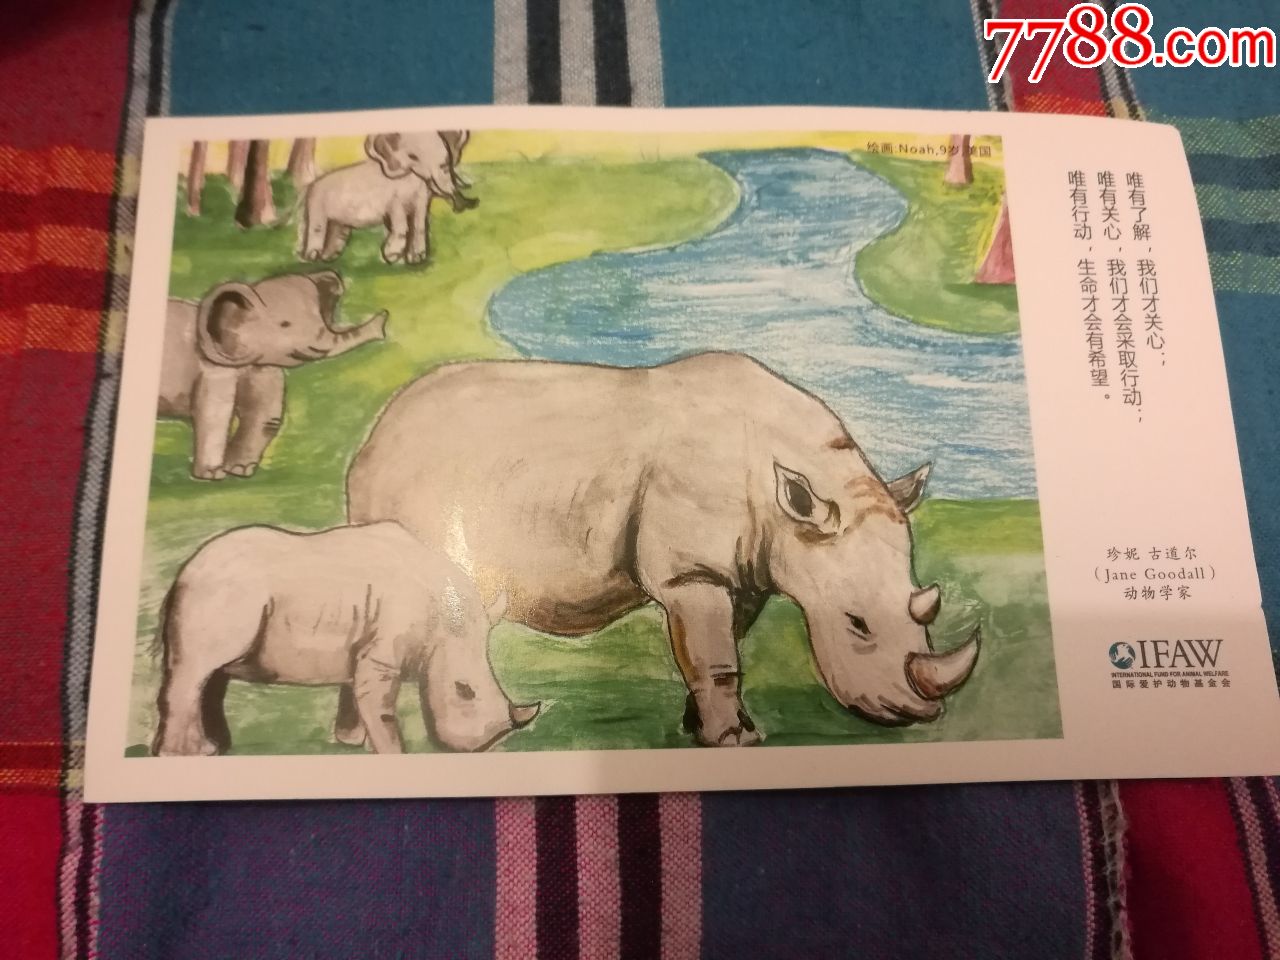 明信片犀牛国际爱护动物基金会1张